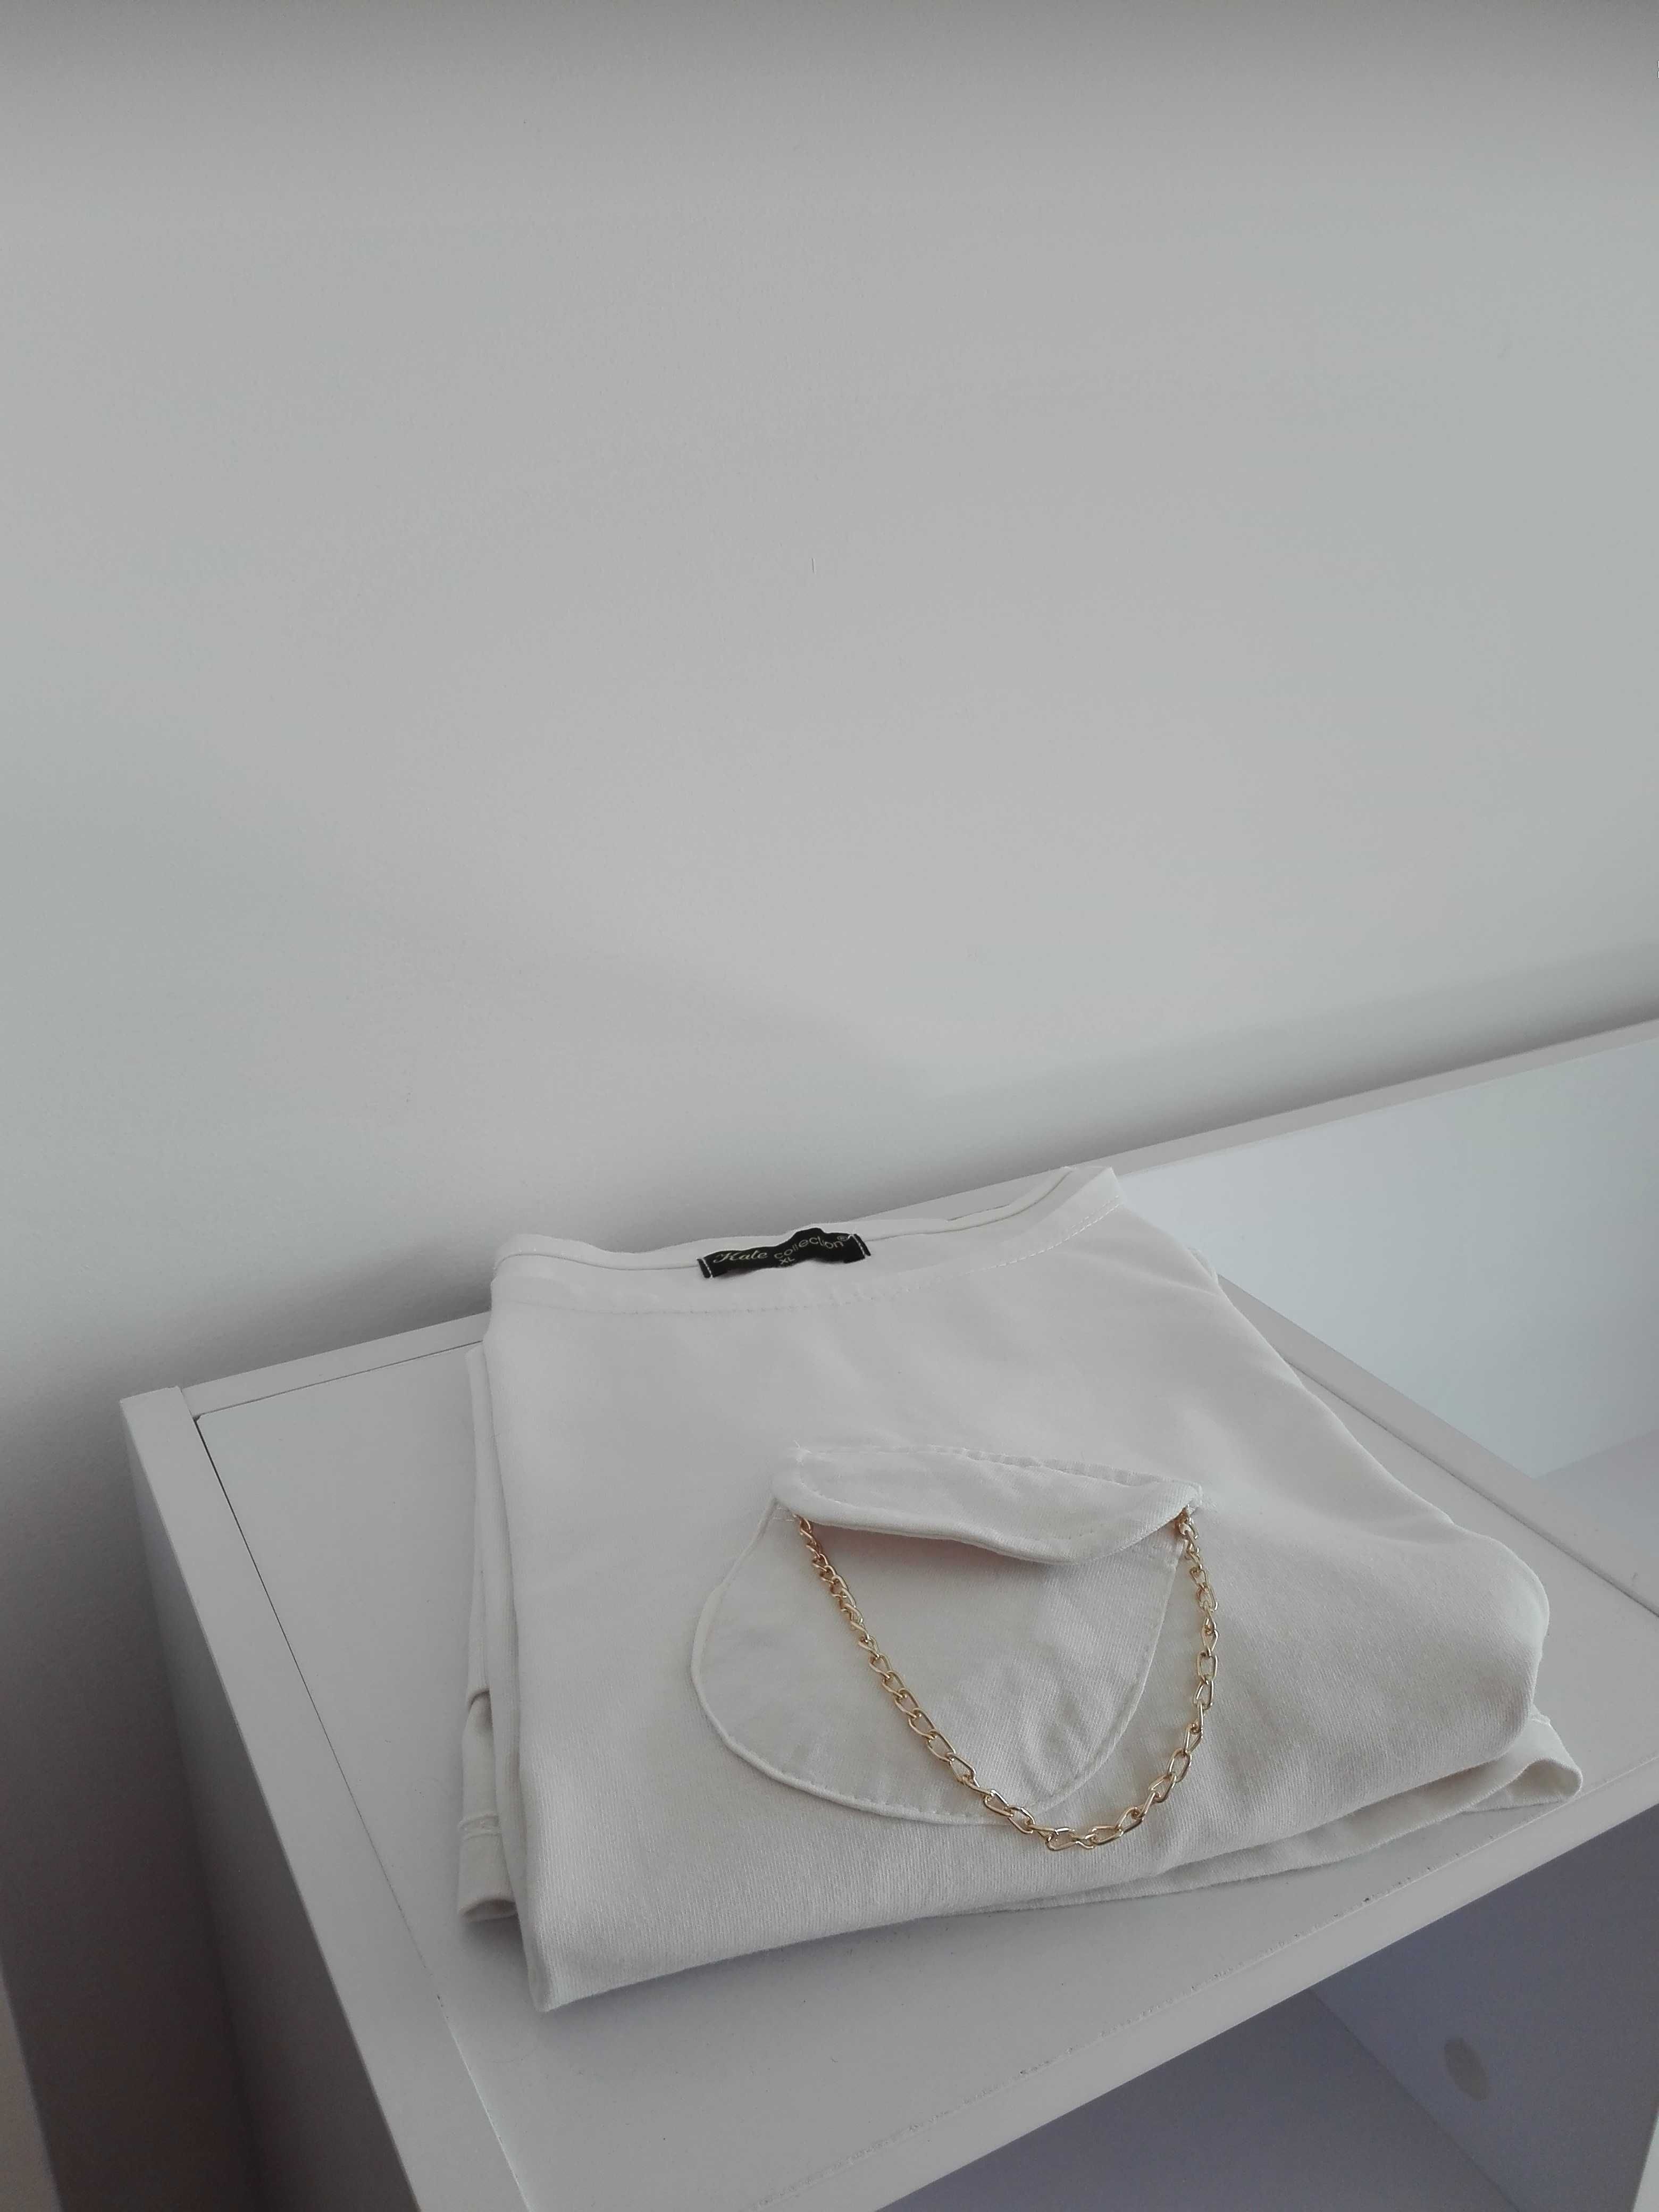 Bluzka/koszulka/t-shirt, r. L/ XL, 40-42, elegancka, biała